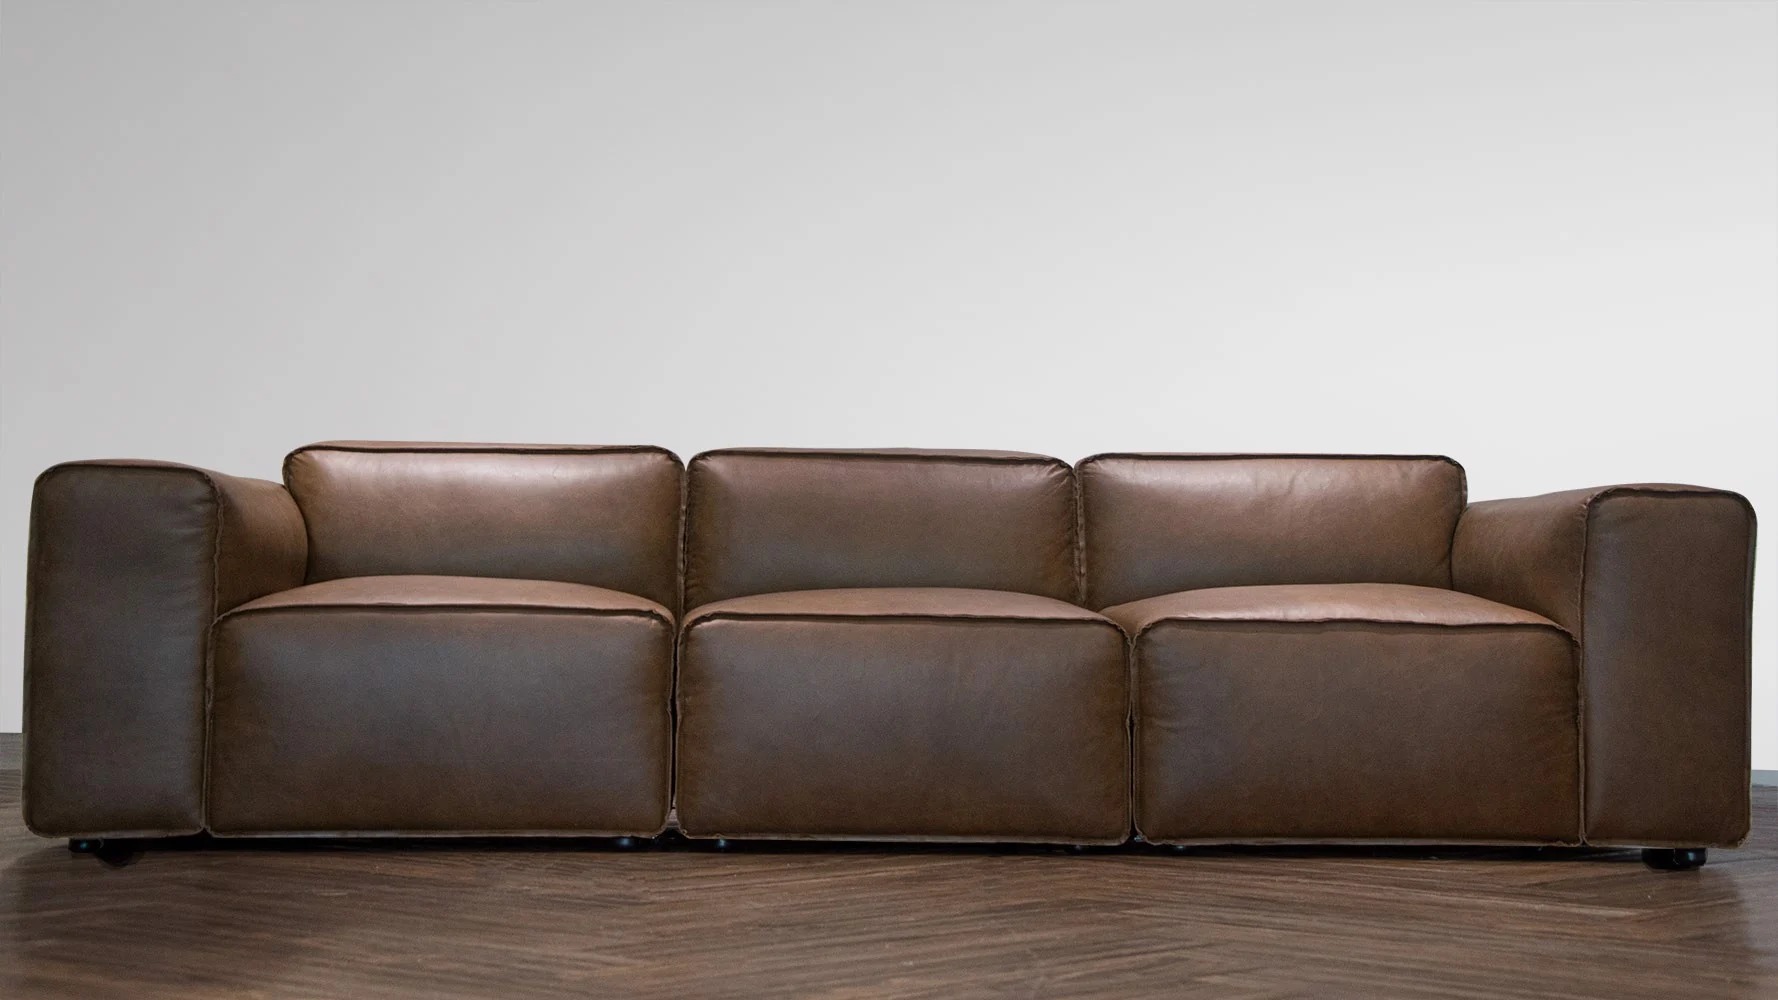 Sofa băng phòng khách hình khối Tundo bọc da cao cấp